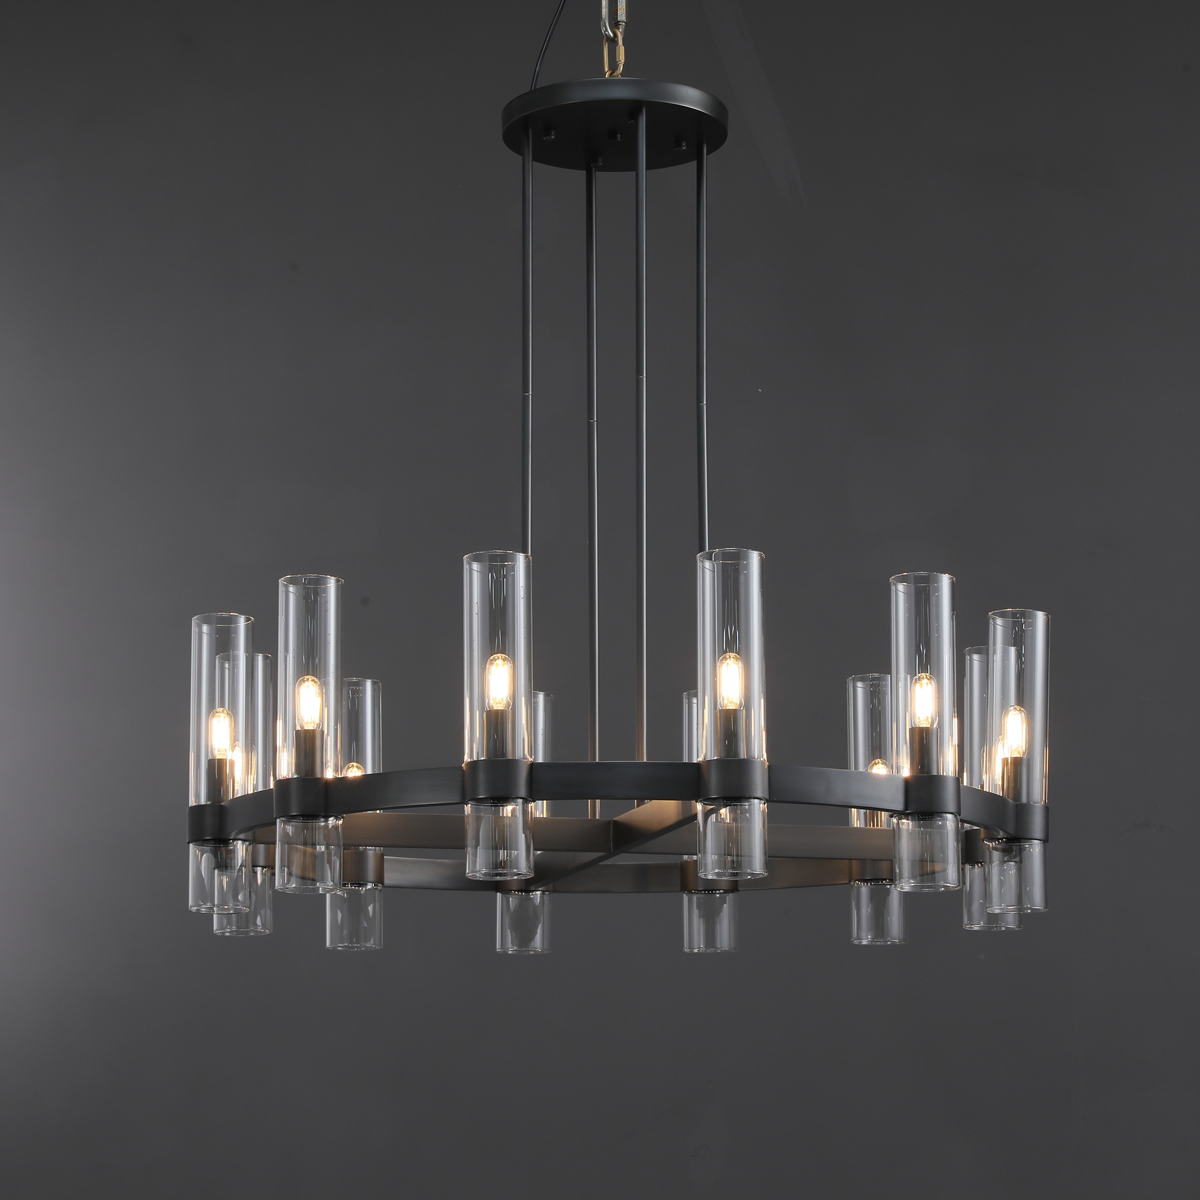 Develle Modern Round Glass Chandelier 36", 48", 60" chandelier Kevin Studio Inc 36" Matte Black 